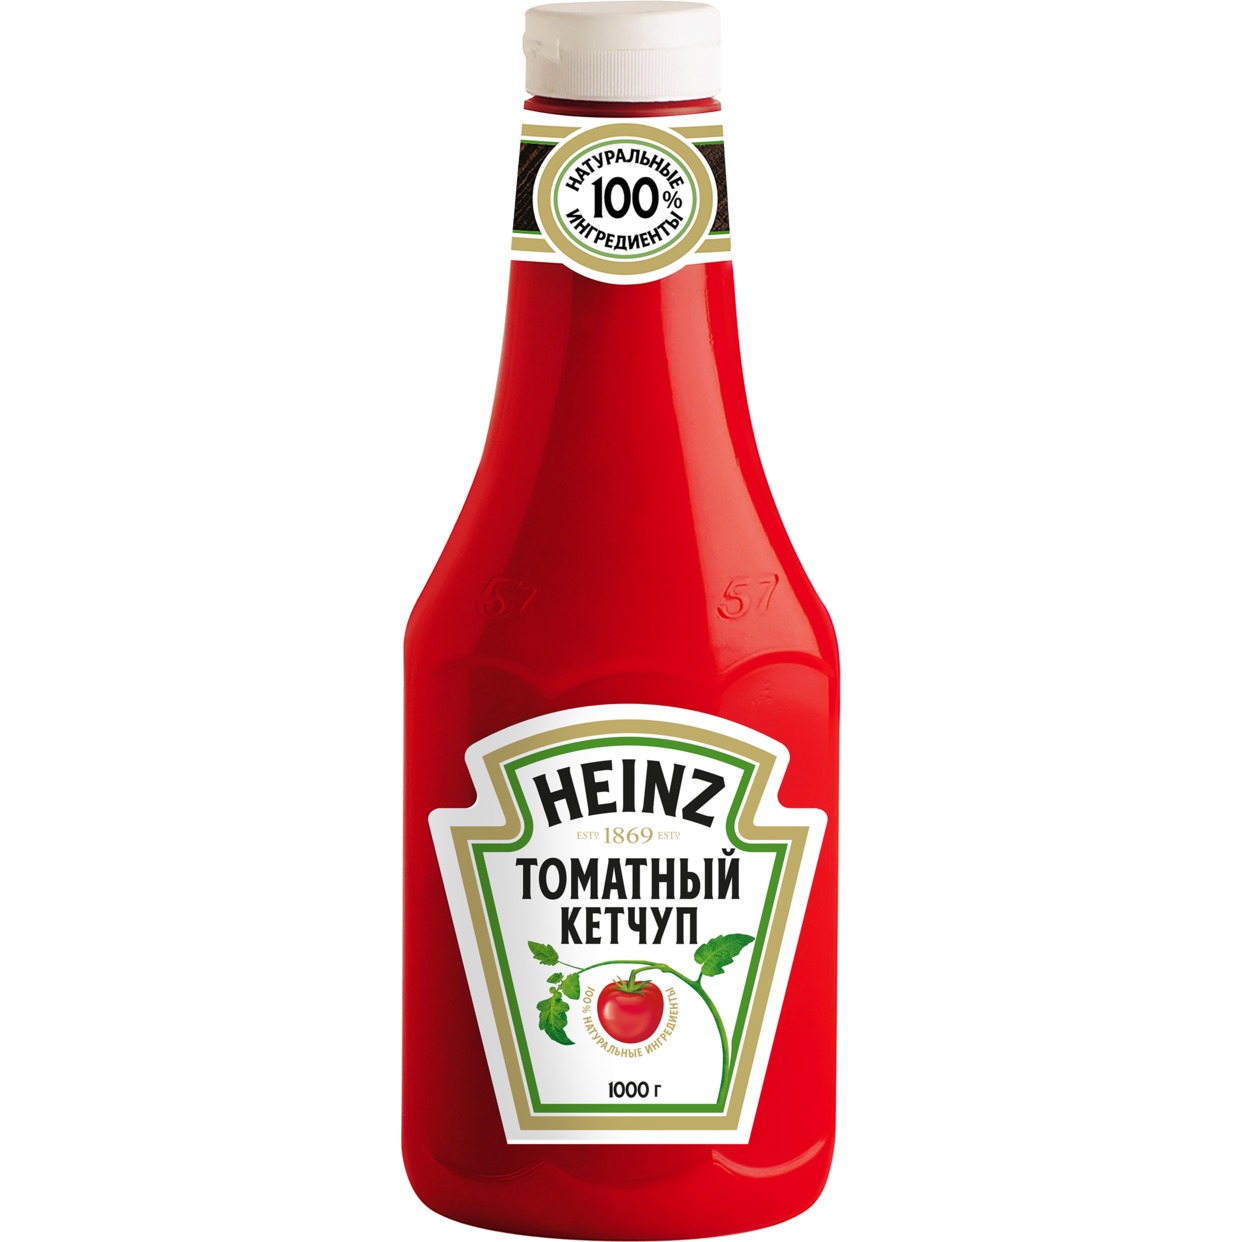 Кетчуп Heinz ,томатный, 1 кг по акции в Пятерочке